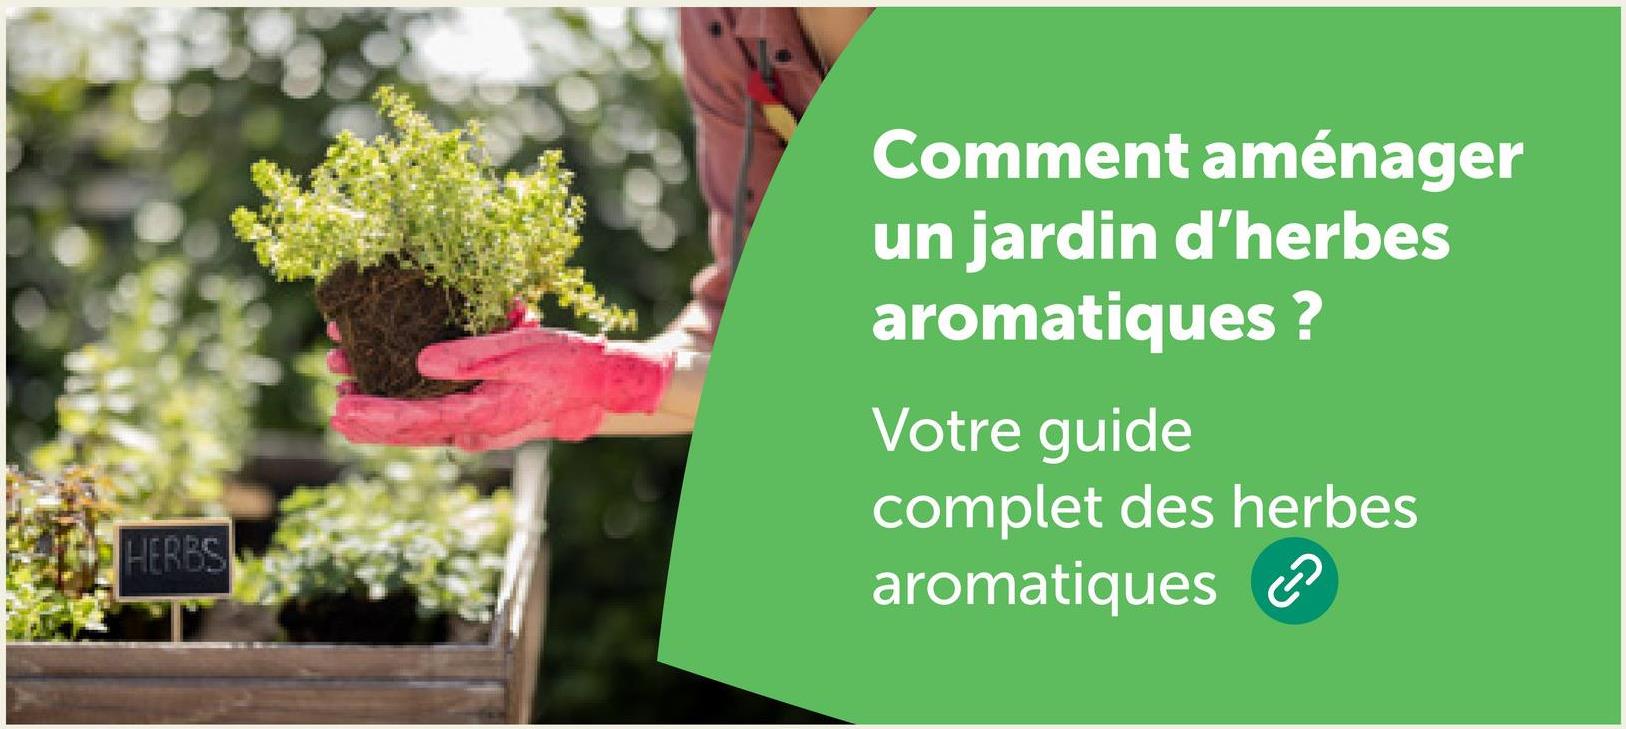 HERBS
Comment aménager
un jardin d'herbes
aromatiques?
Votre guide
complet des herbes
aromatiques